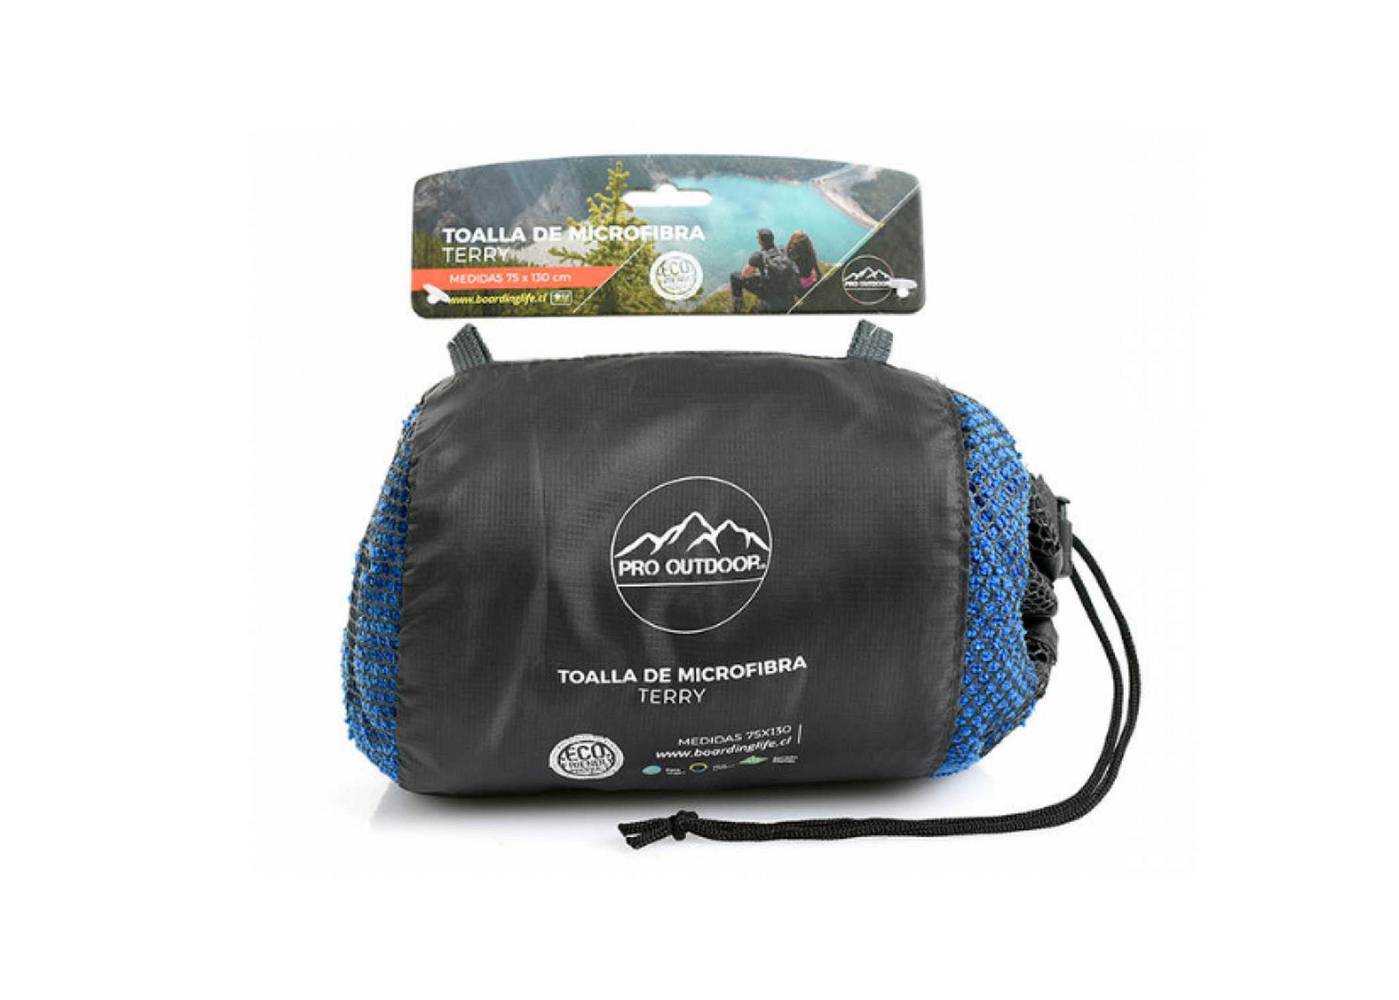 Pro outdoor  toalla outdoor terry pro outdoor (1 toalla, 1 bolso)